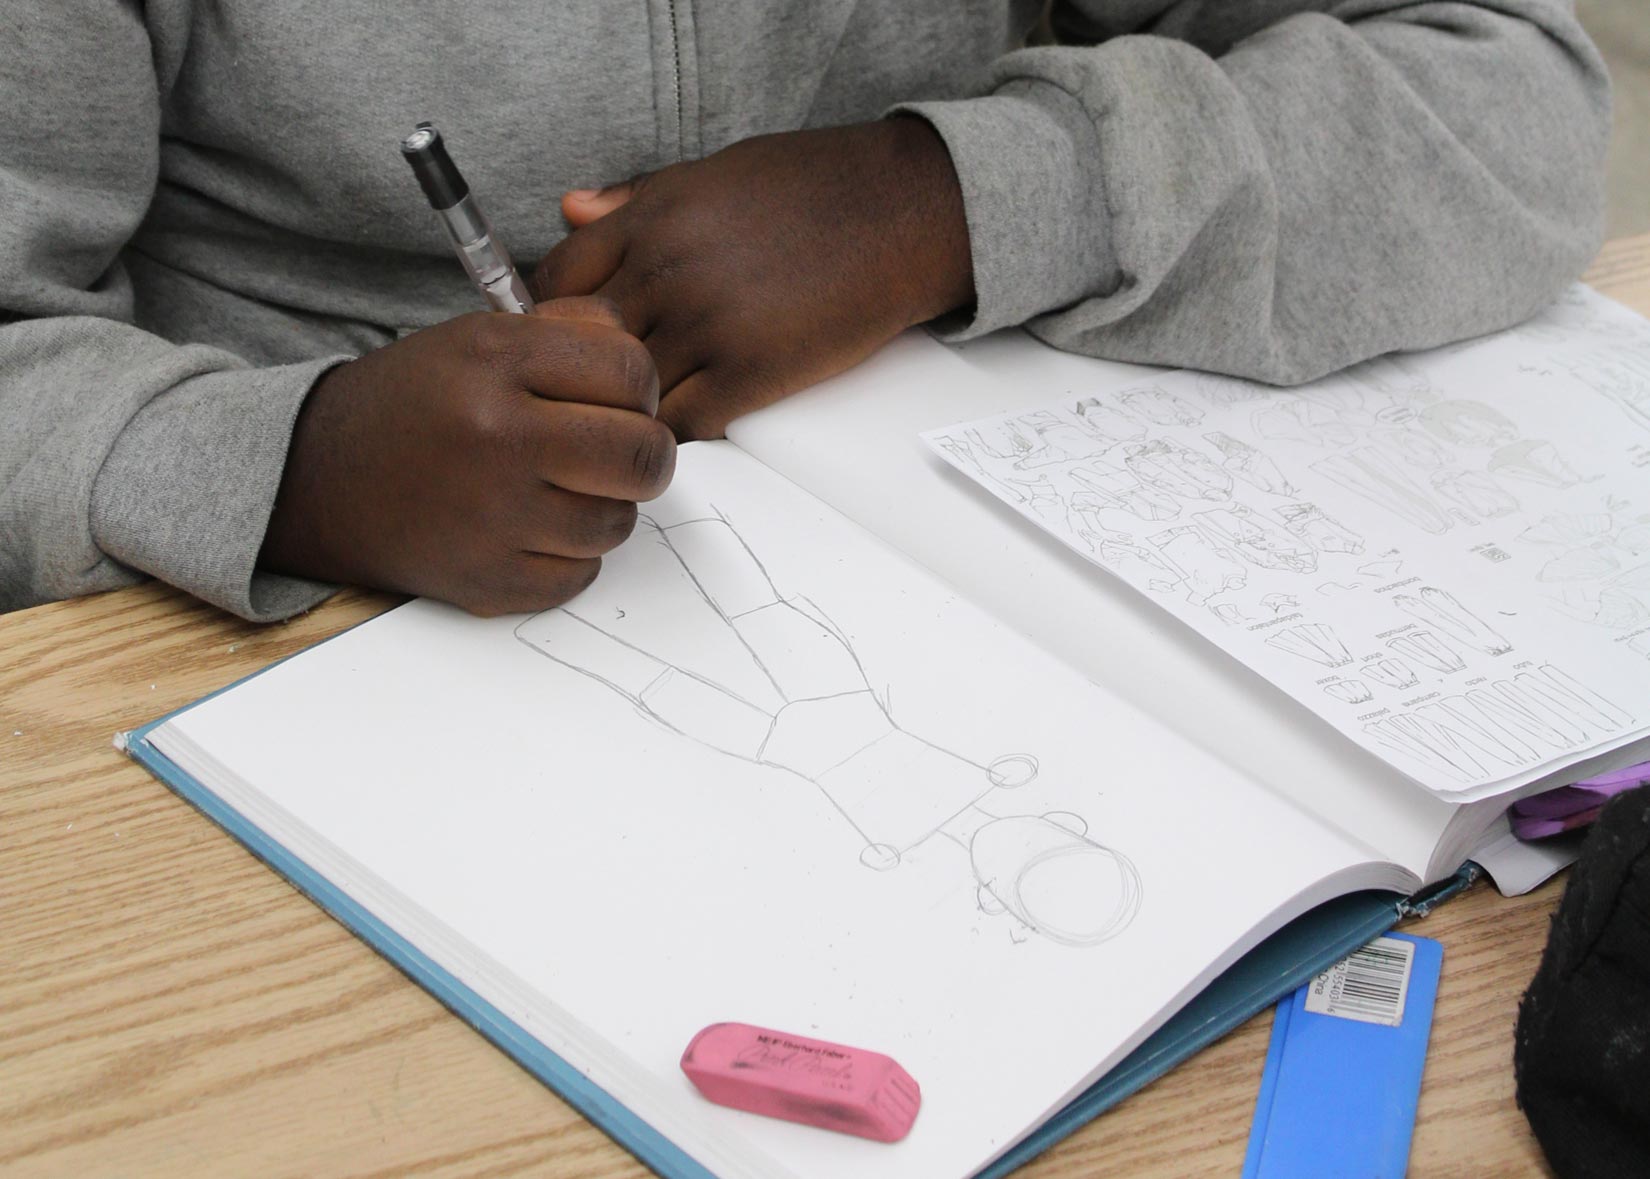 Kids Graphite Drawing In Sketchbook 2021 Crop